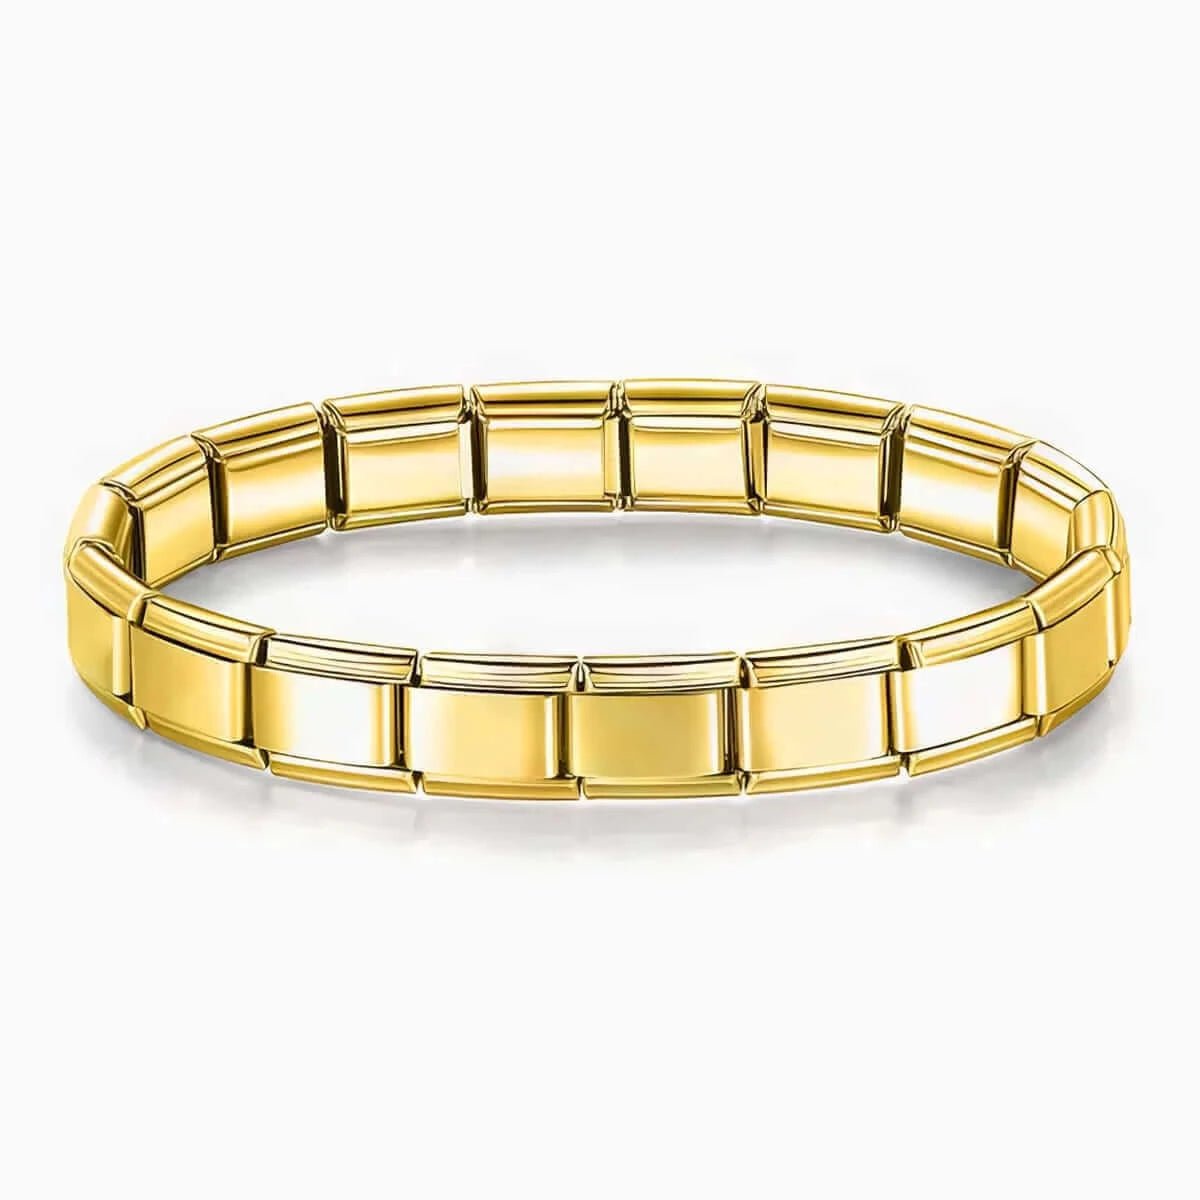 Pin by Bella Diez on Pandora bracelet charms ideas | Pandora bracelet  designs, Pandora jewelry charms, Pandora bracelet charms